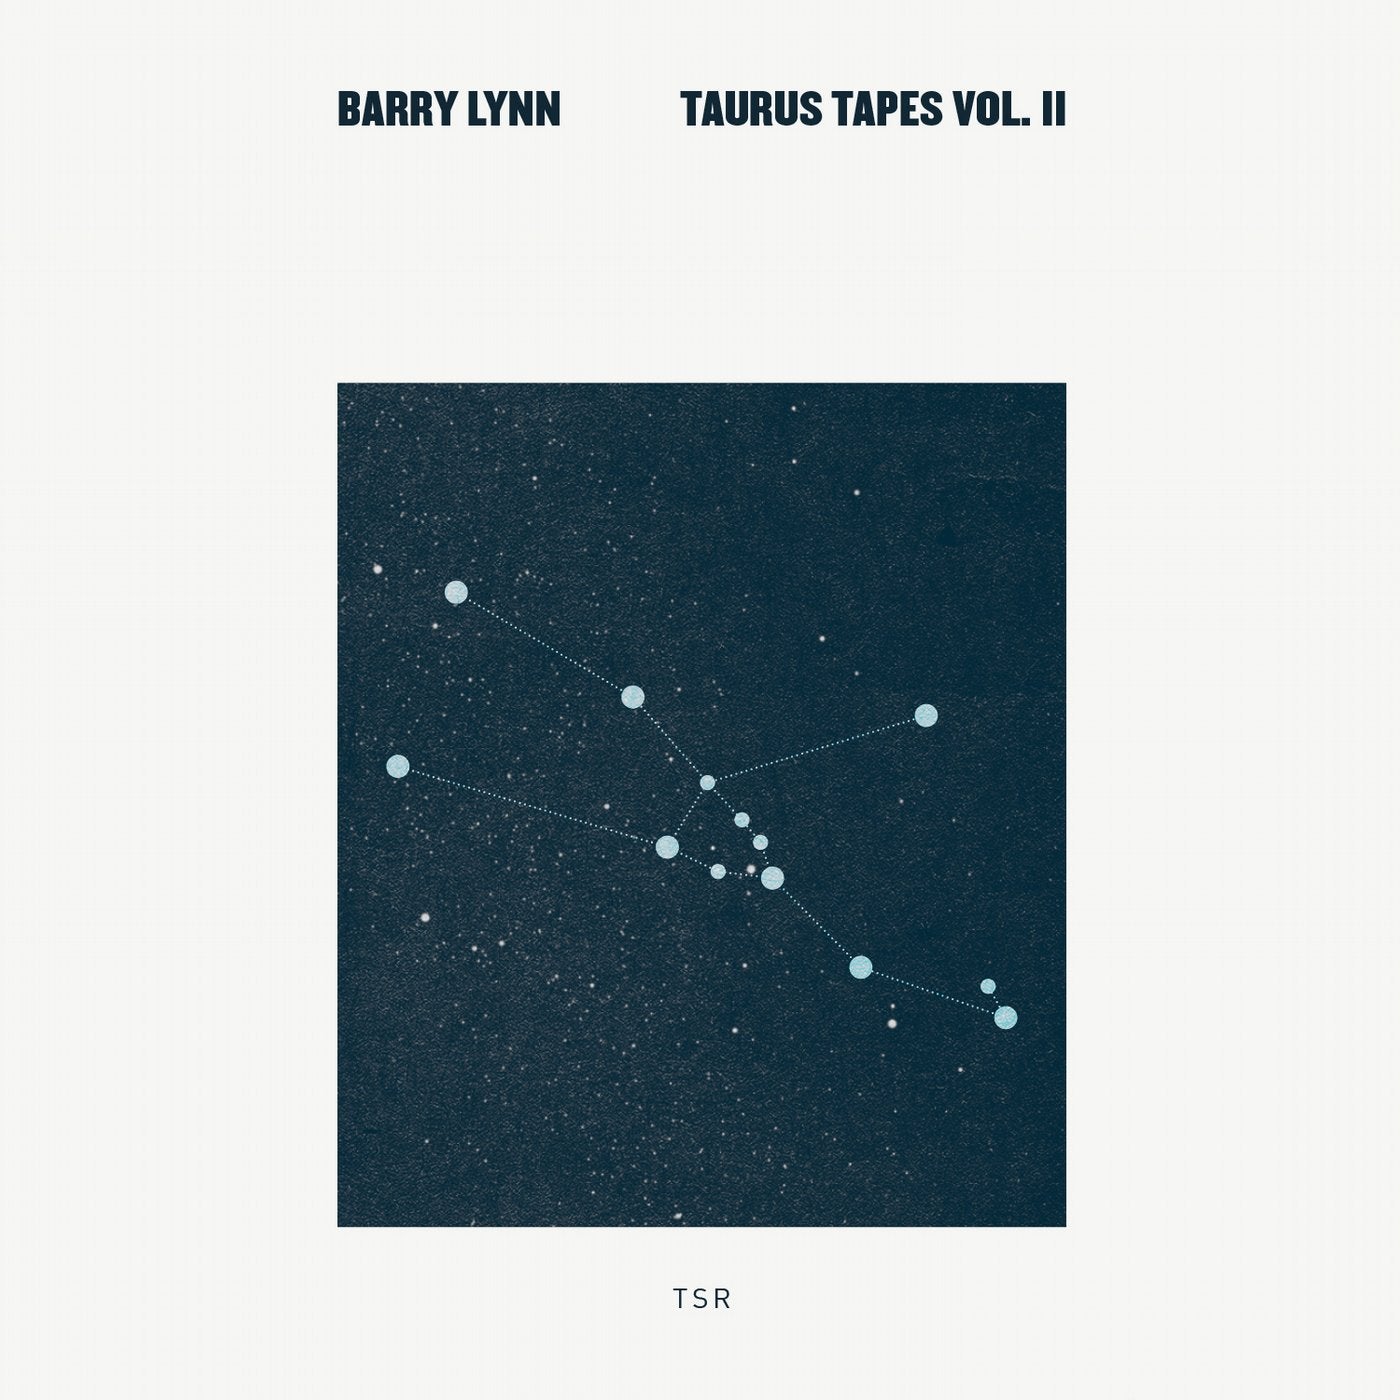 Taurus Tapes Vol. II